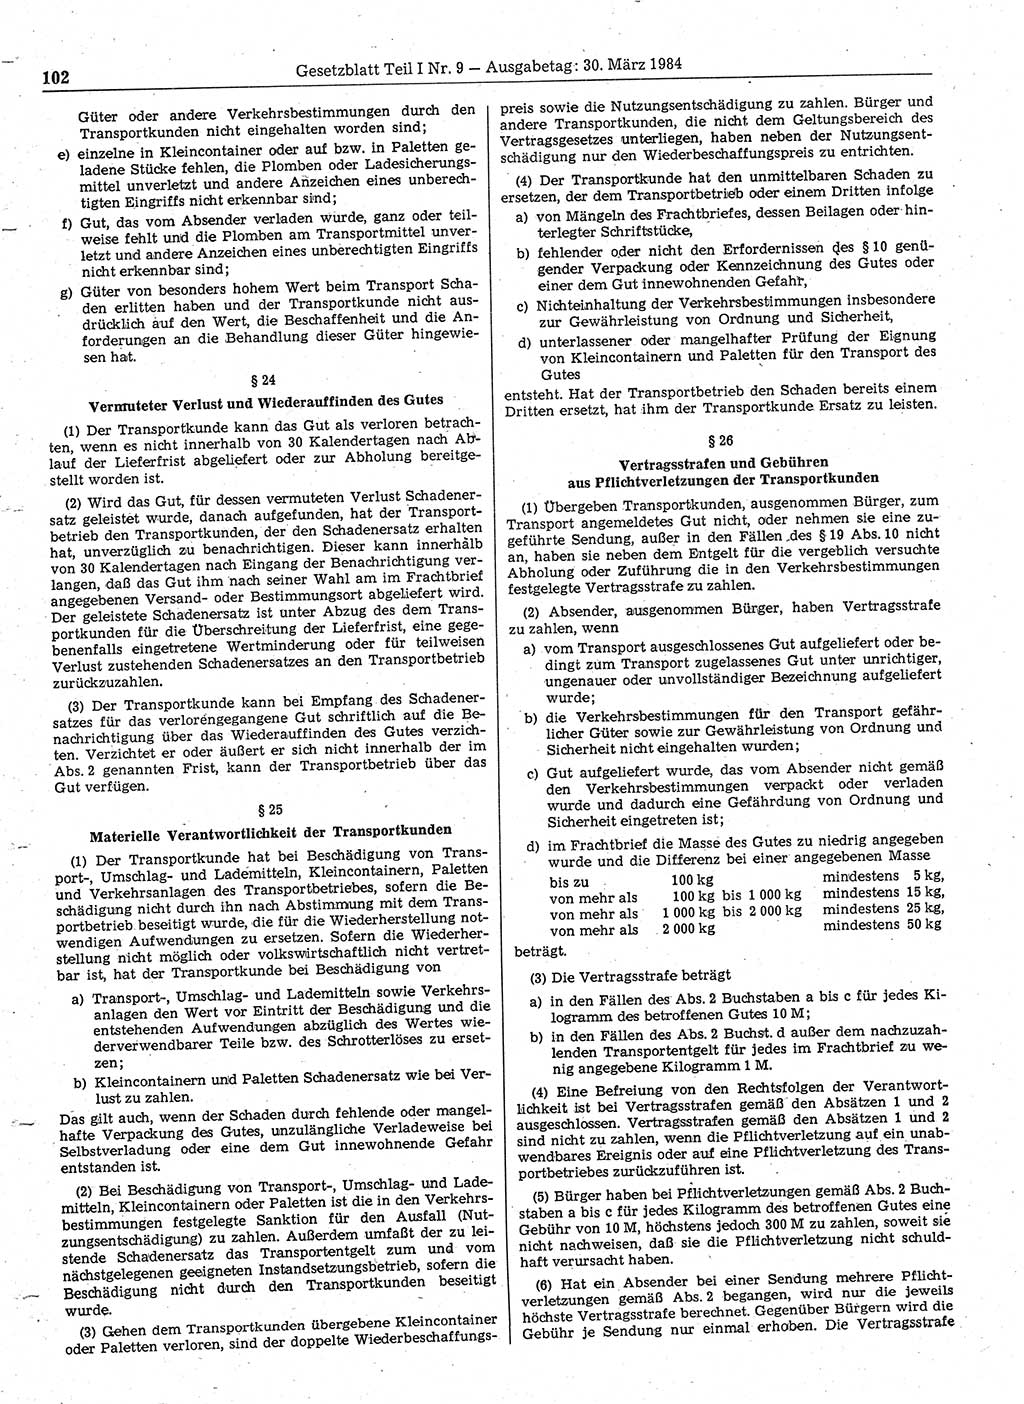 Gesetzblatt (GBl.) der Deutschen Demokratischen Republik (DDR) Teil Ⅰ 1984, Seite 102 (GBl. DDR Ⅰ 1984, S. 102)